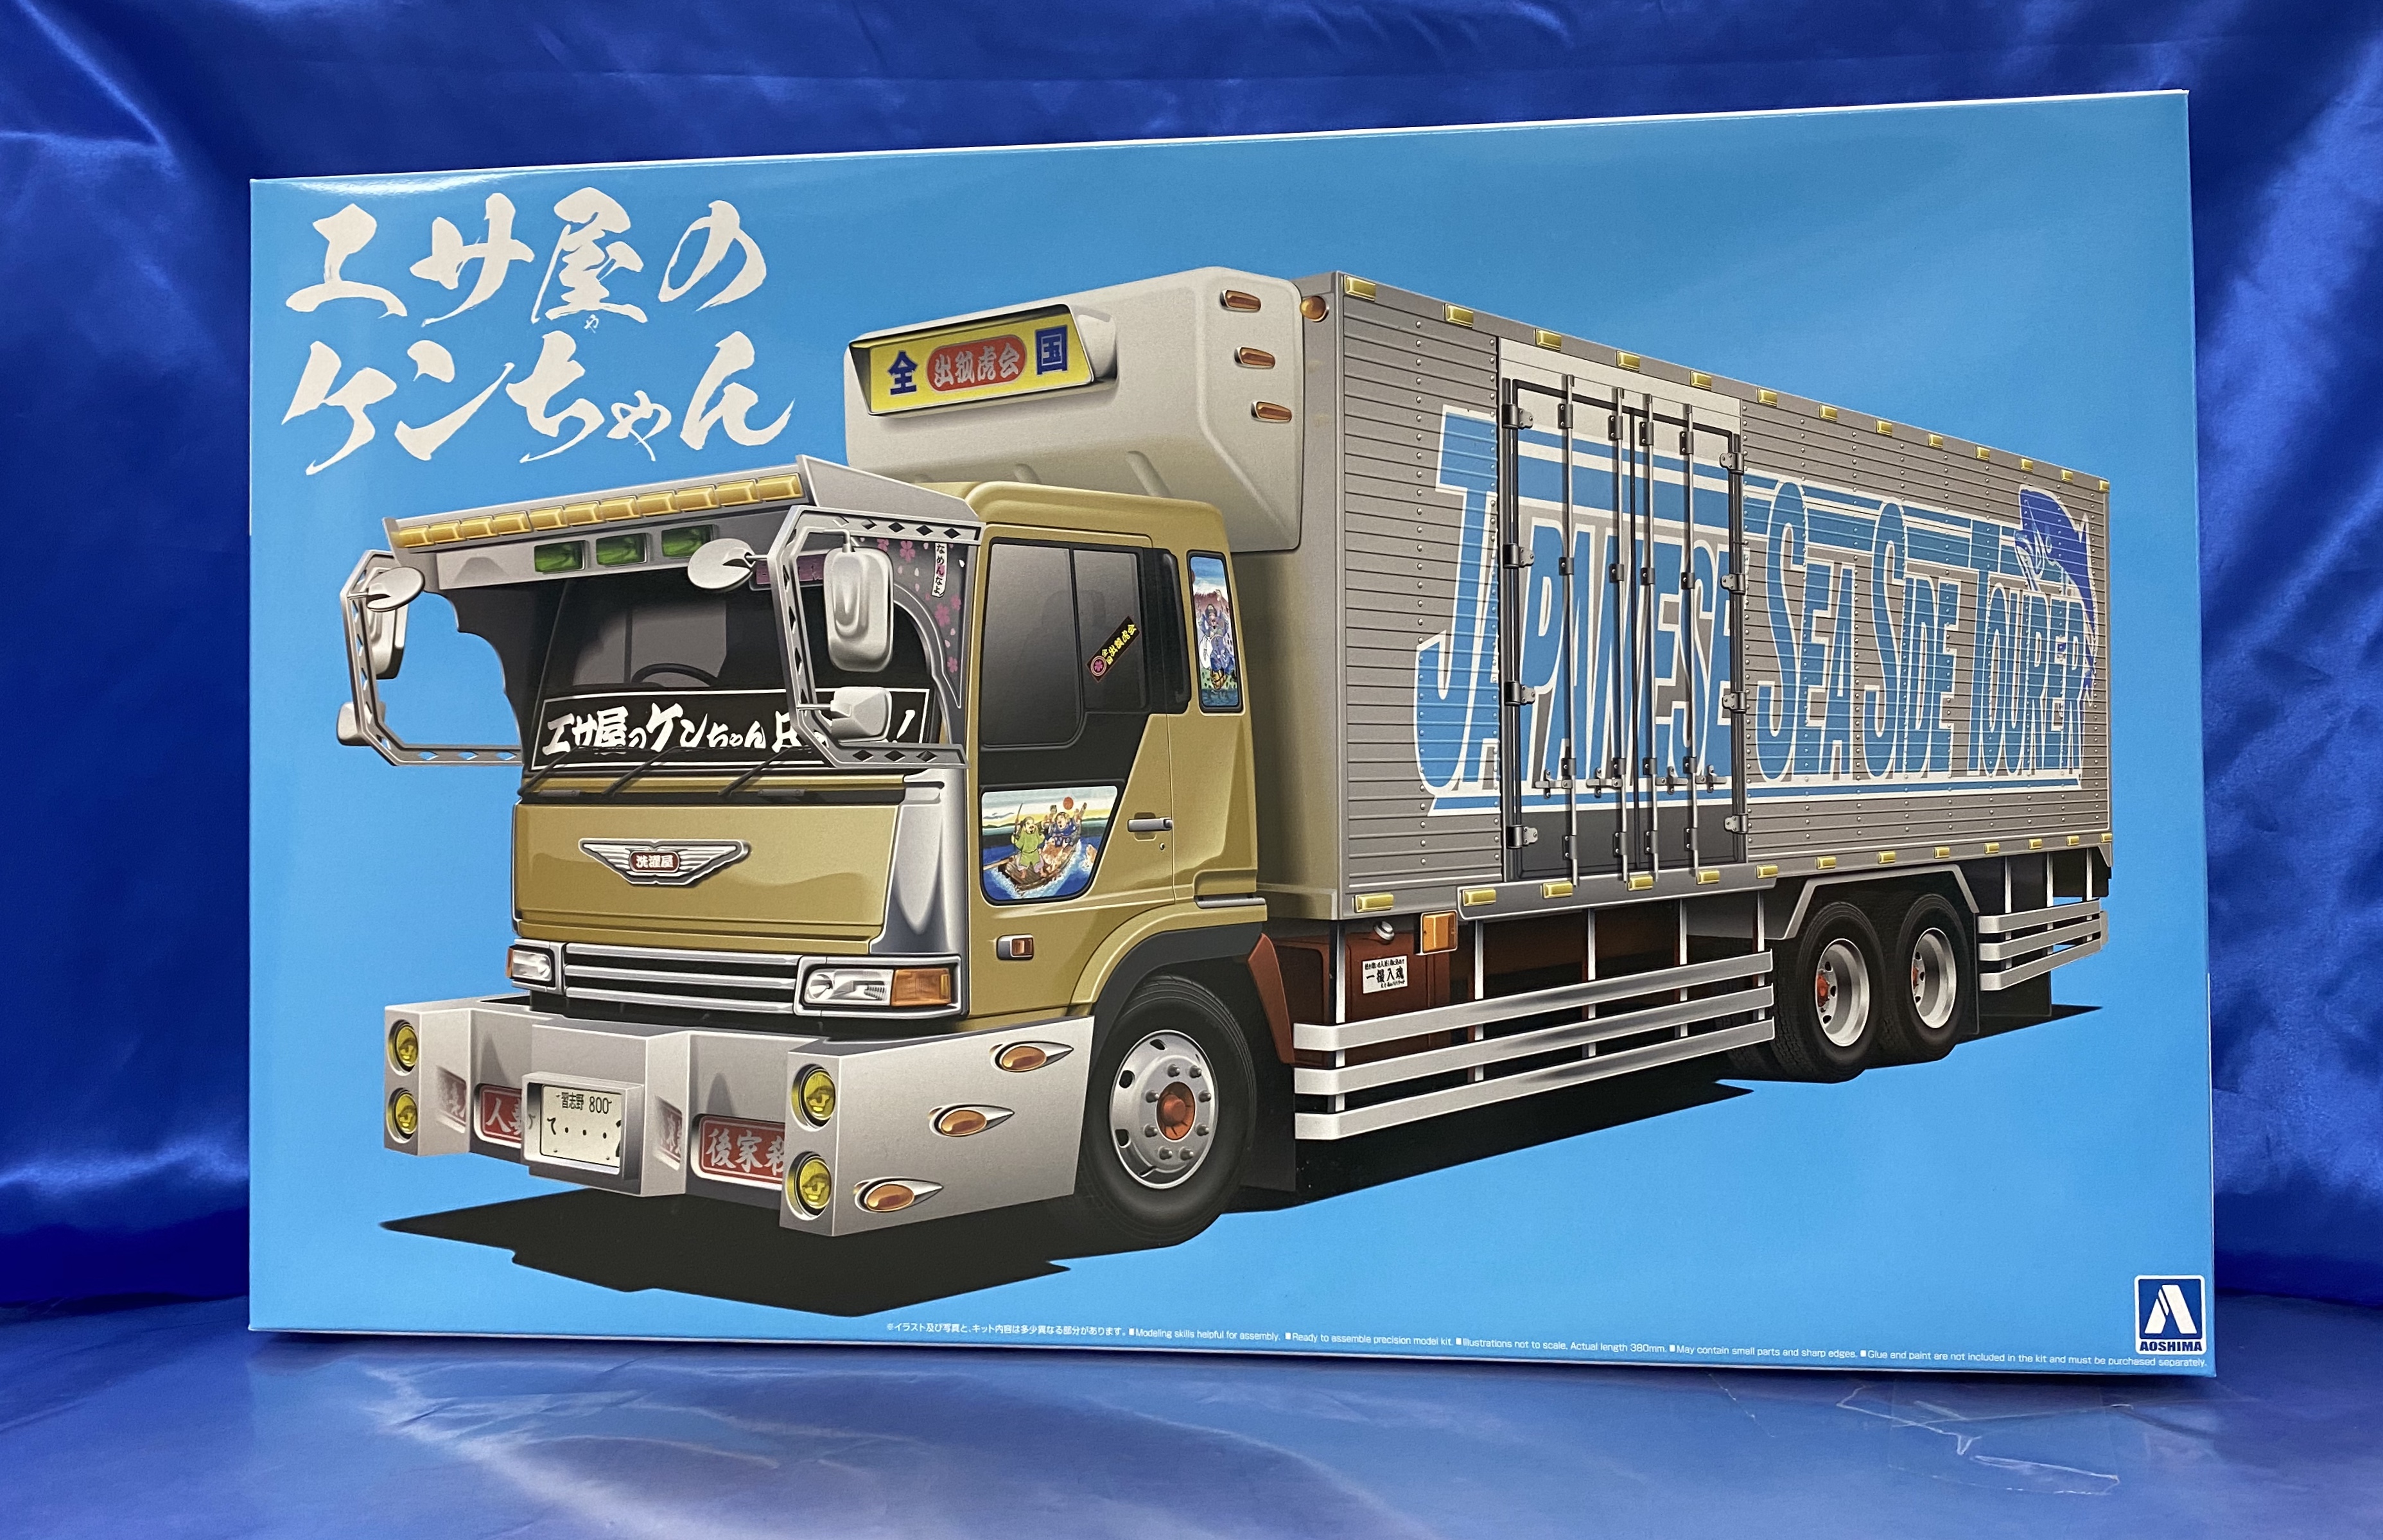 買取情報 Aoshimaのプラモデル 1 32 エサ屋のケンちゃん 大型冷凍車 桃太郎王国のブログ